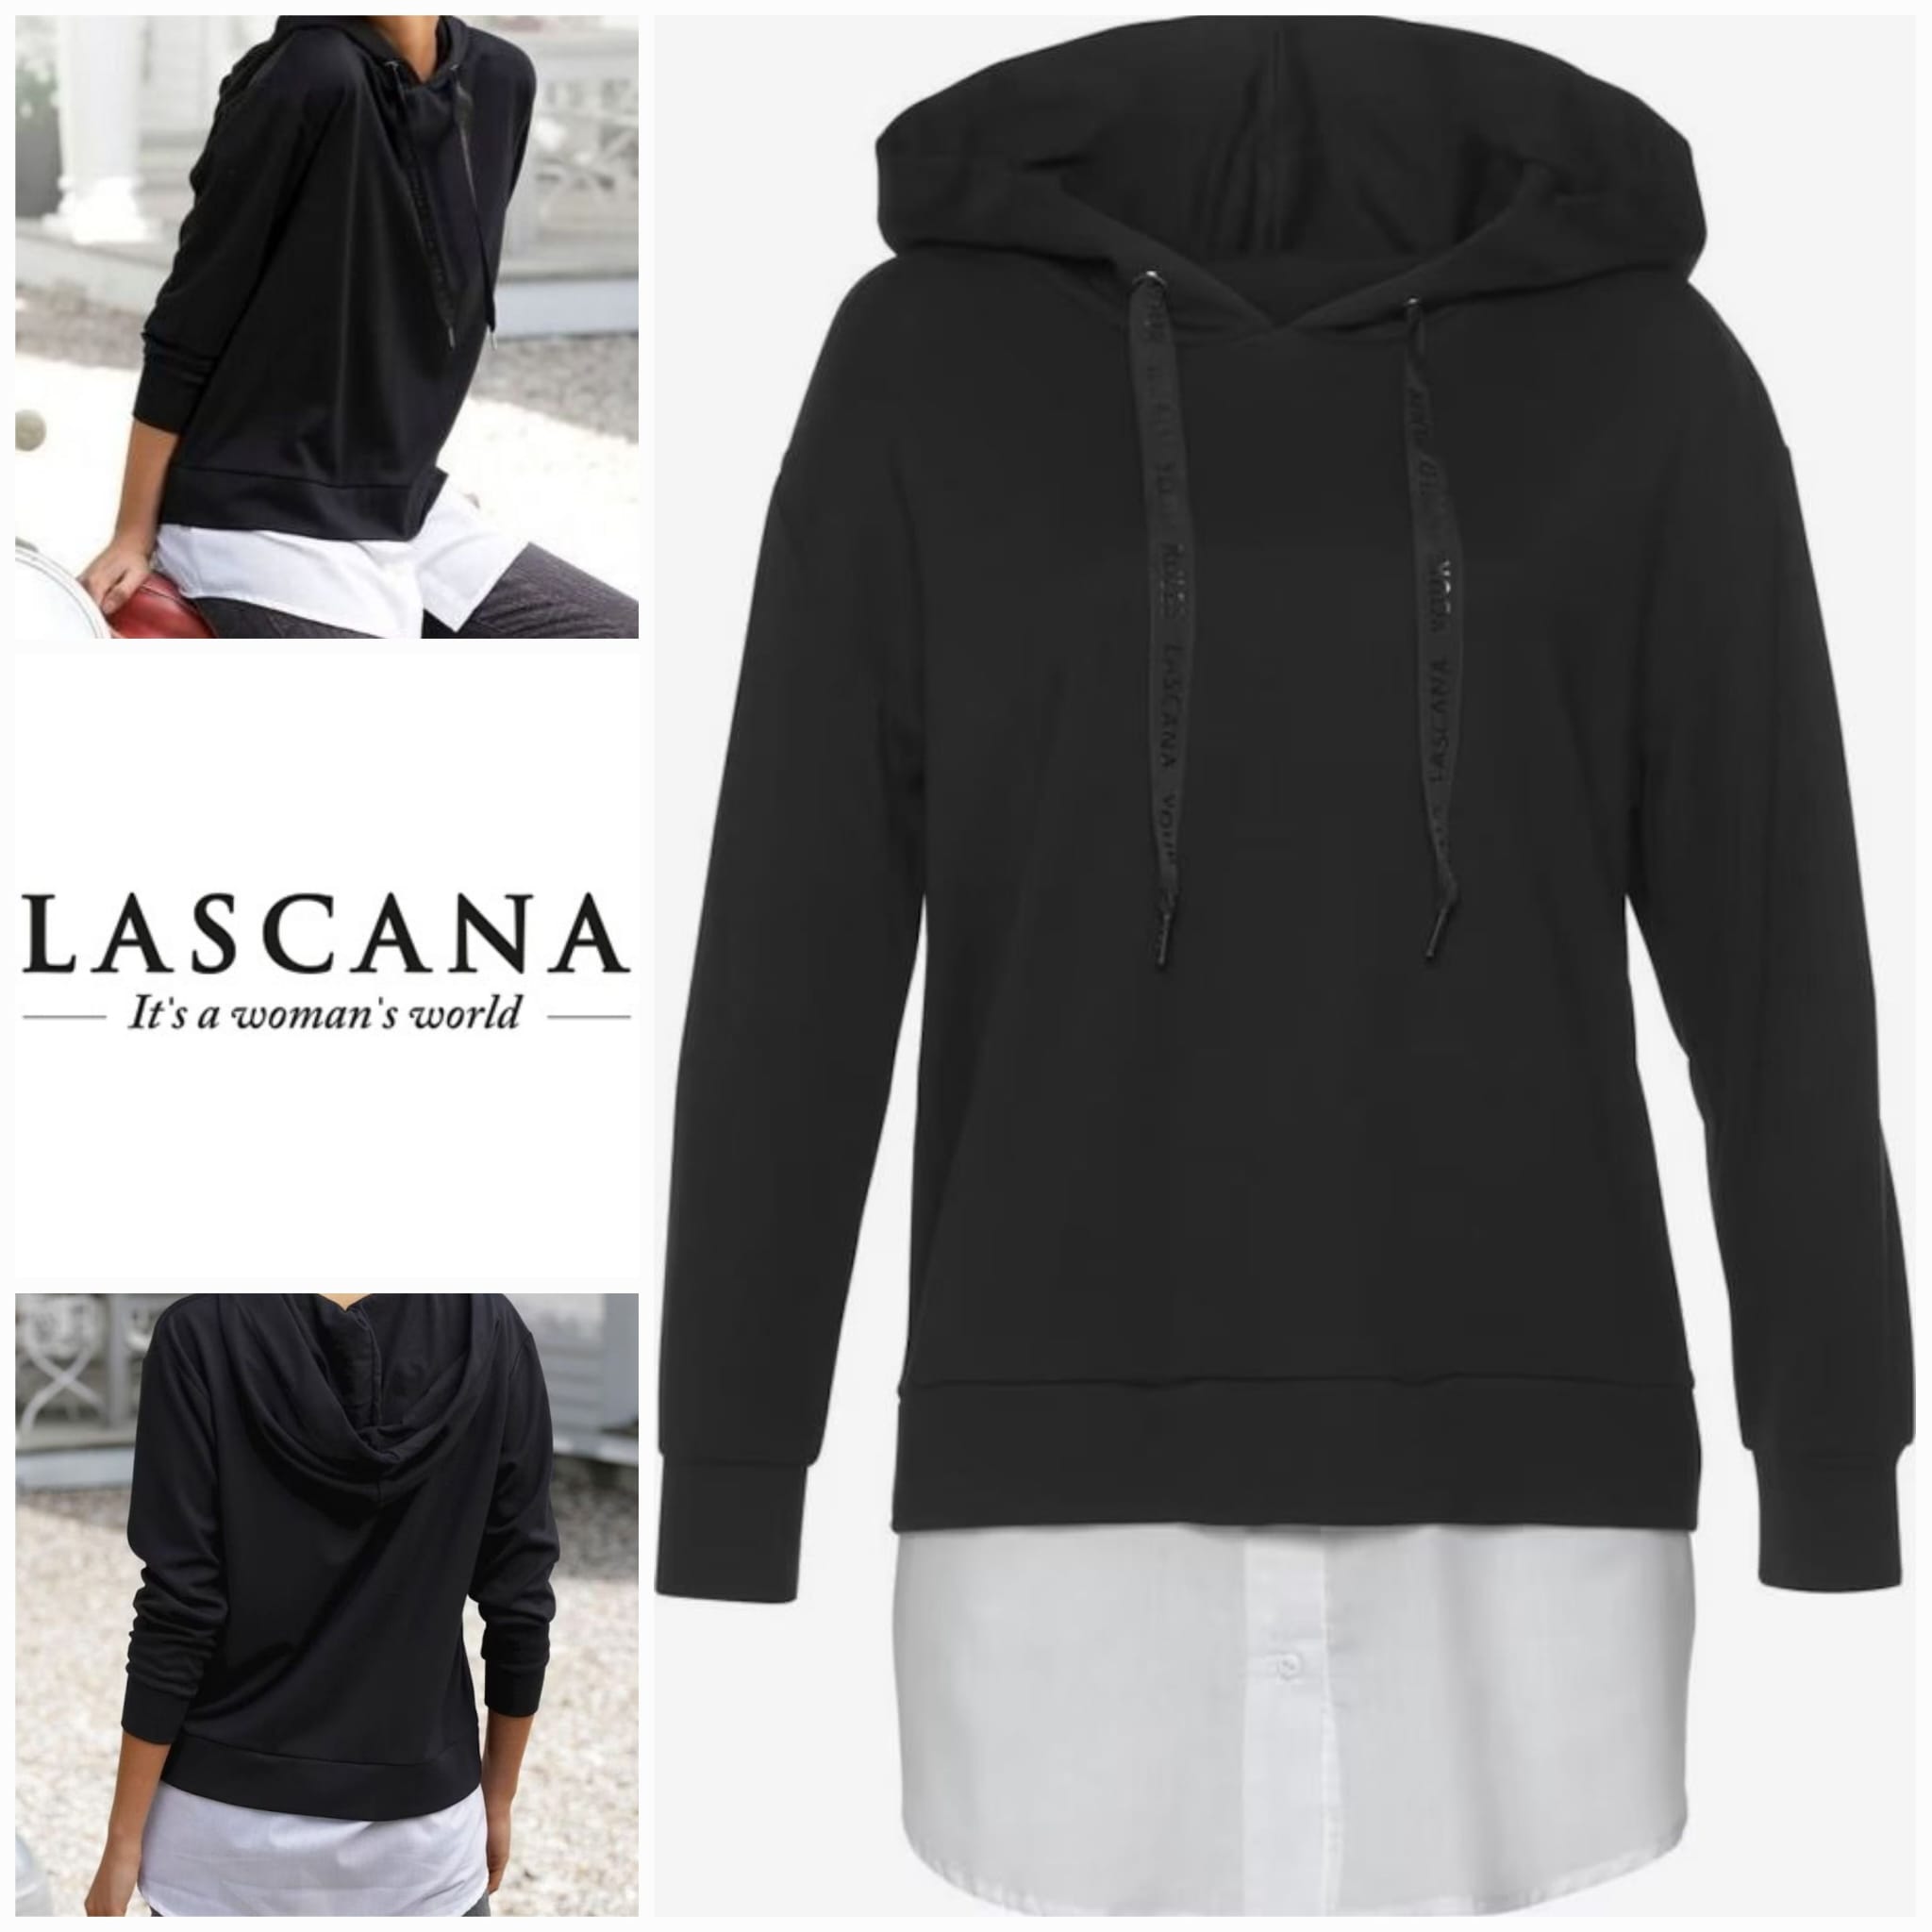 Women's hoodie by Lascana 2 in 1